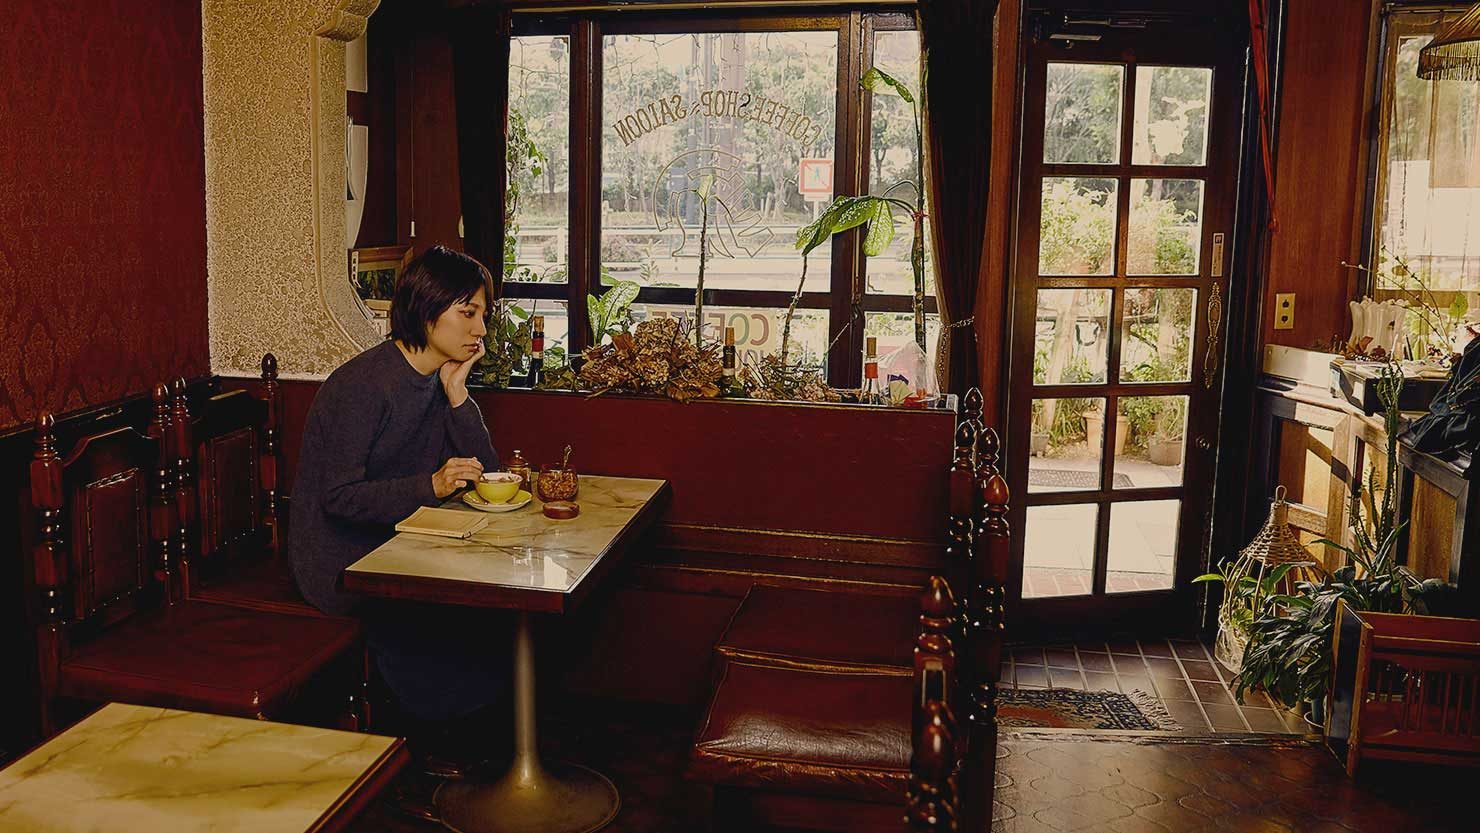 ホームズ ゆっくりと流れる時間を楽しむ 京都でレトロな純喫茶巡り 暮らし方から物件探し